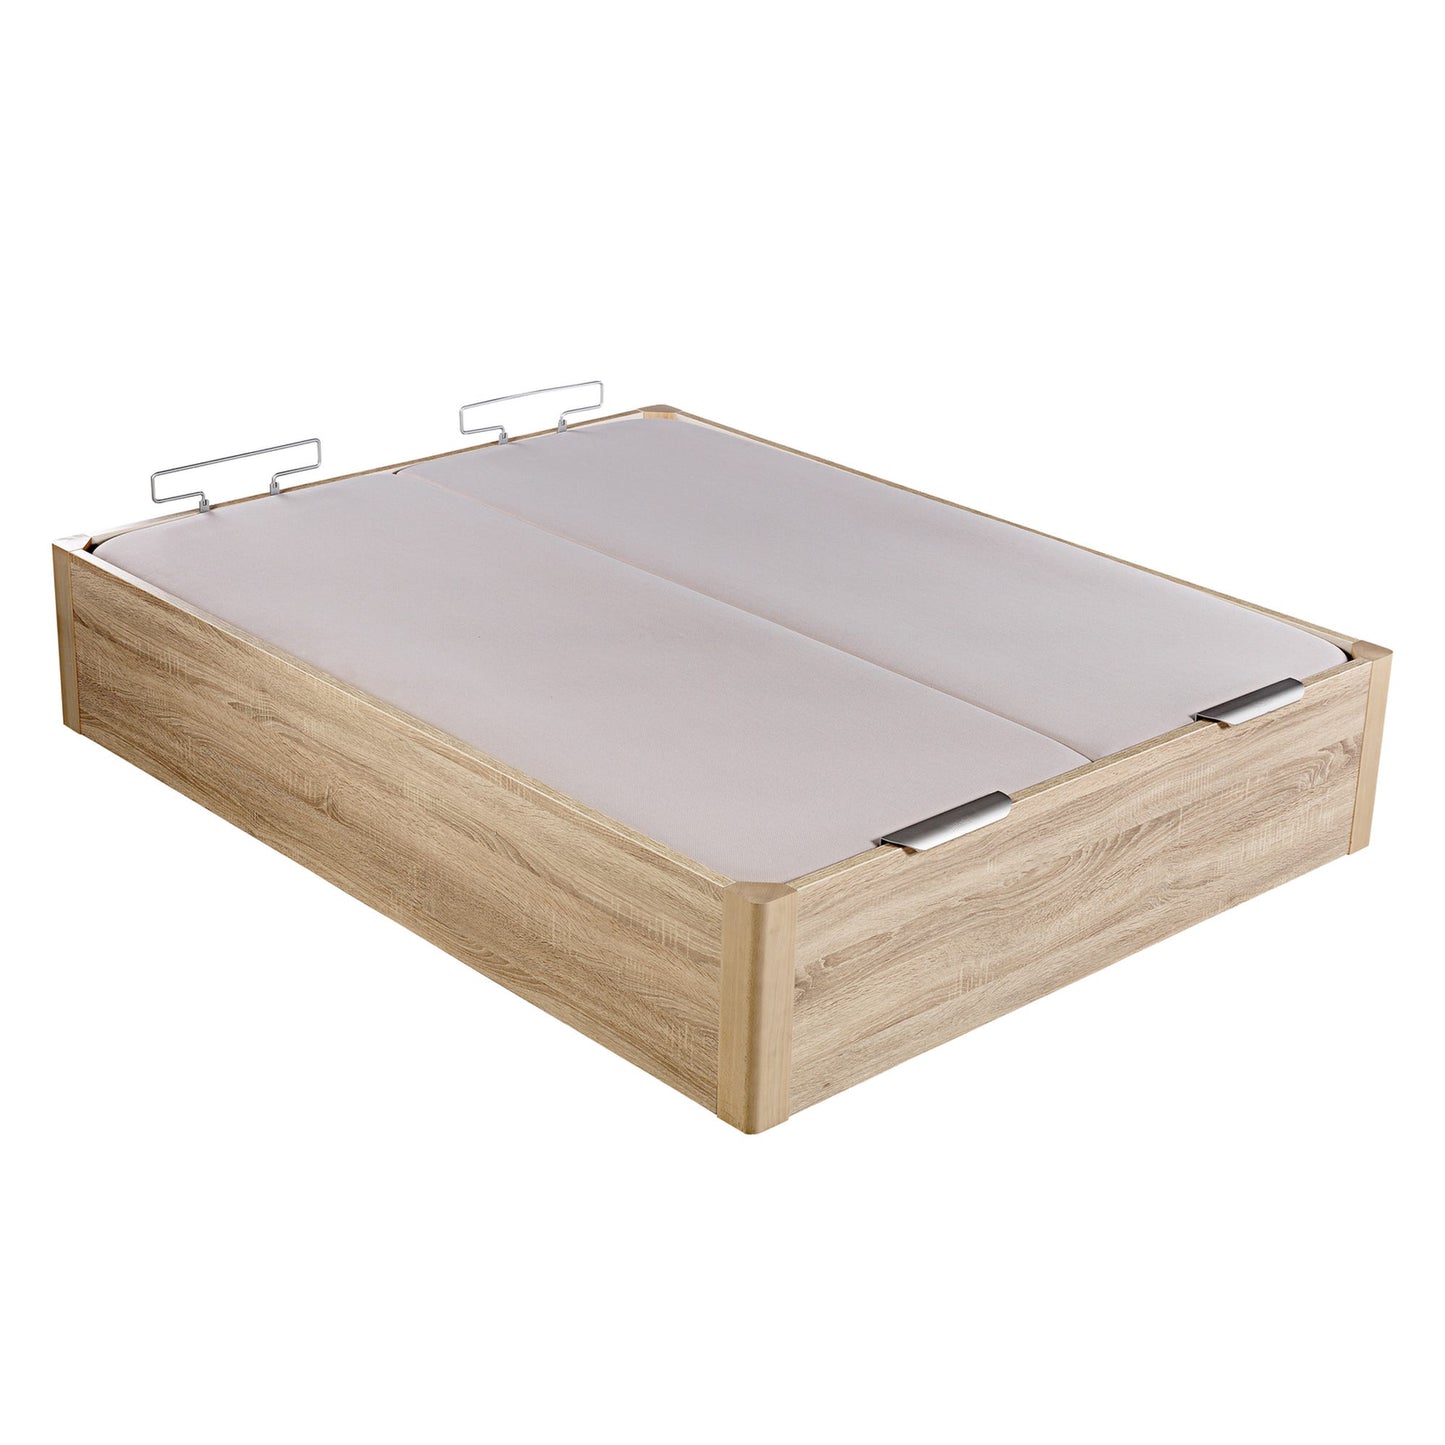 Canapé abatible de madera de alta capacidad tapa doble de color natural - DESIGN - 180x190